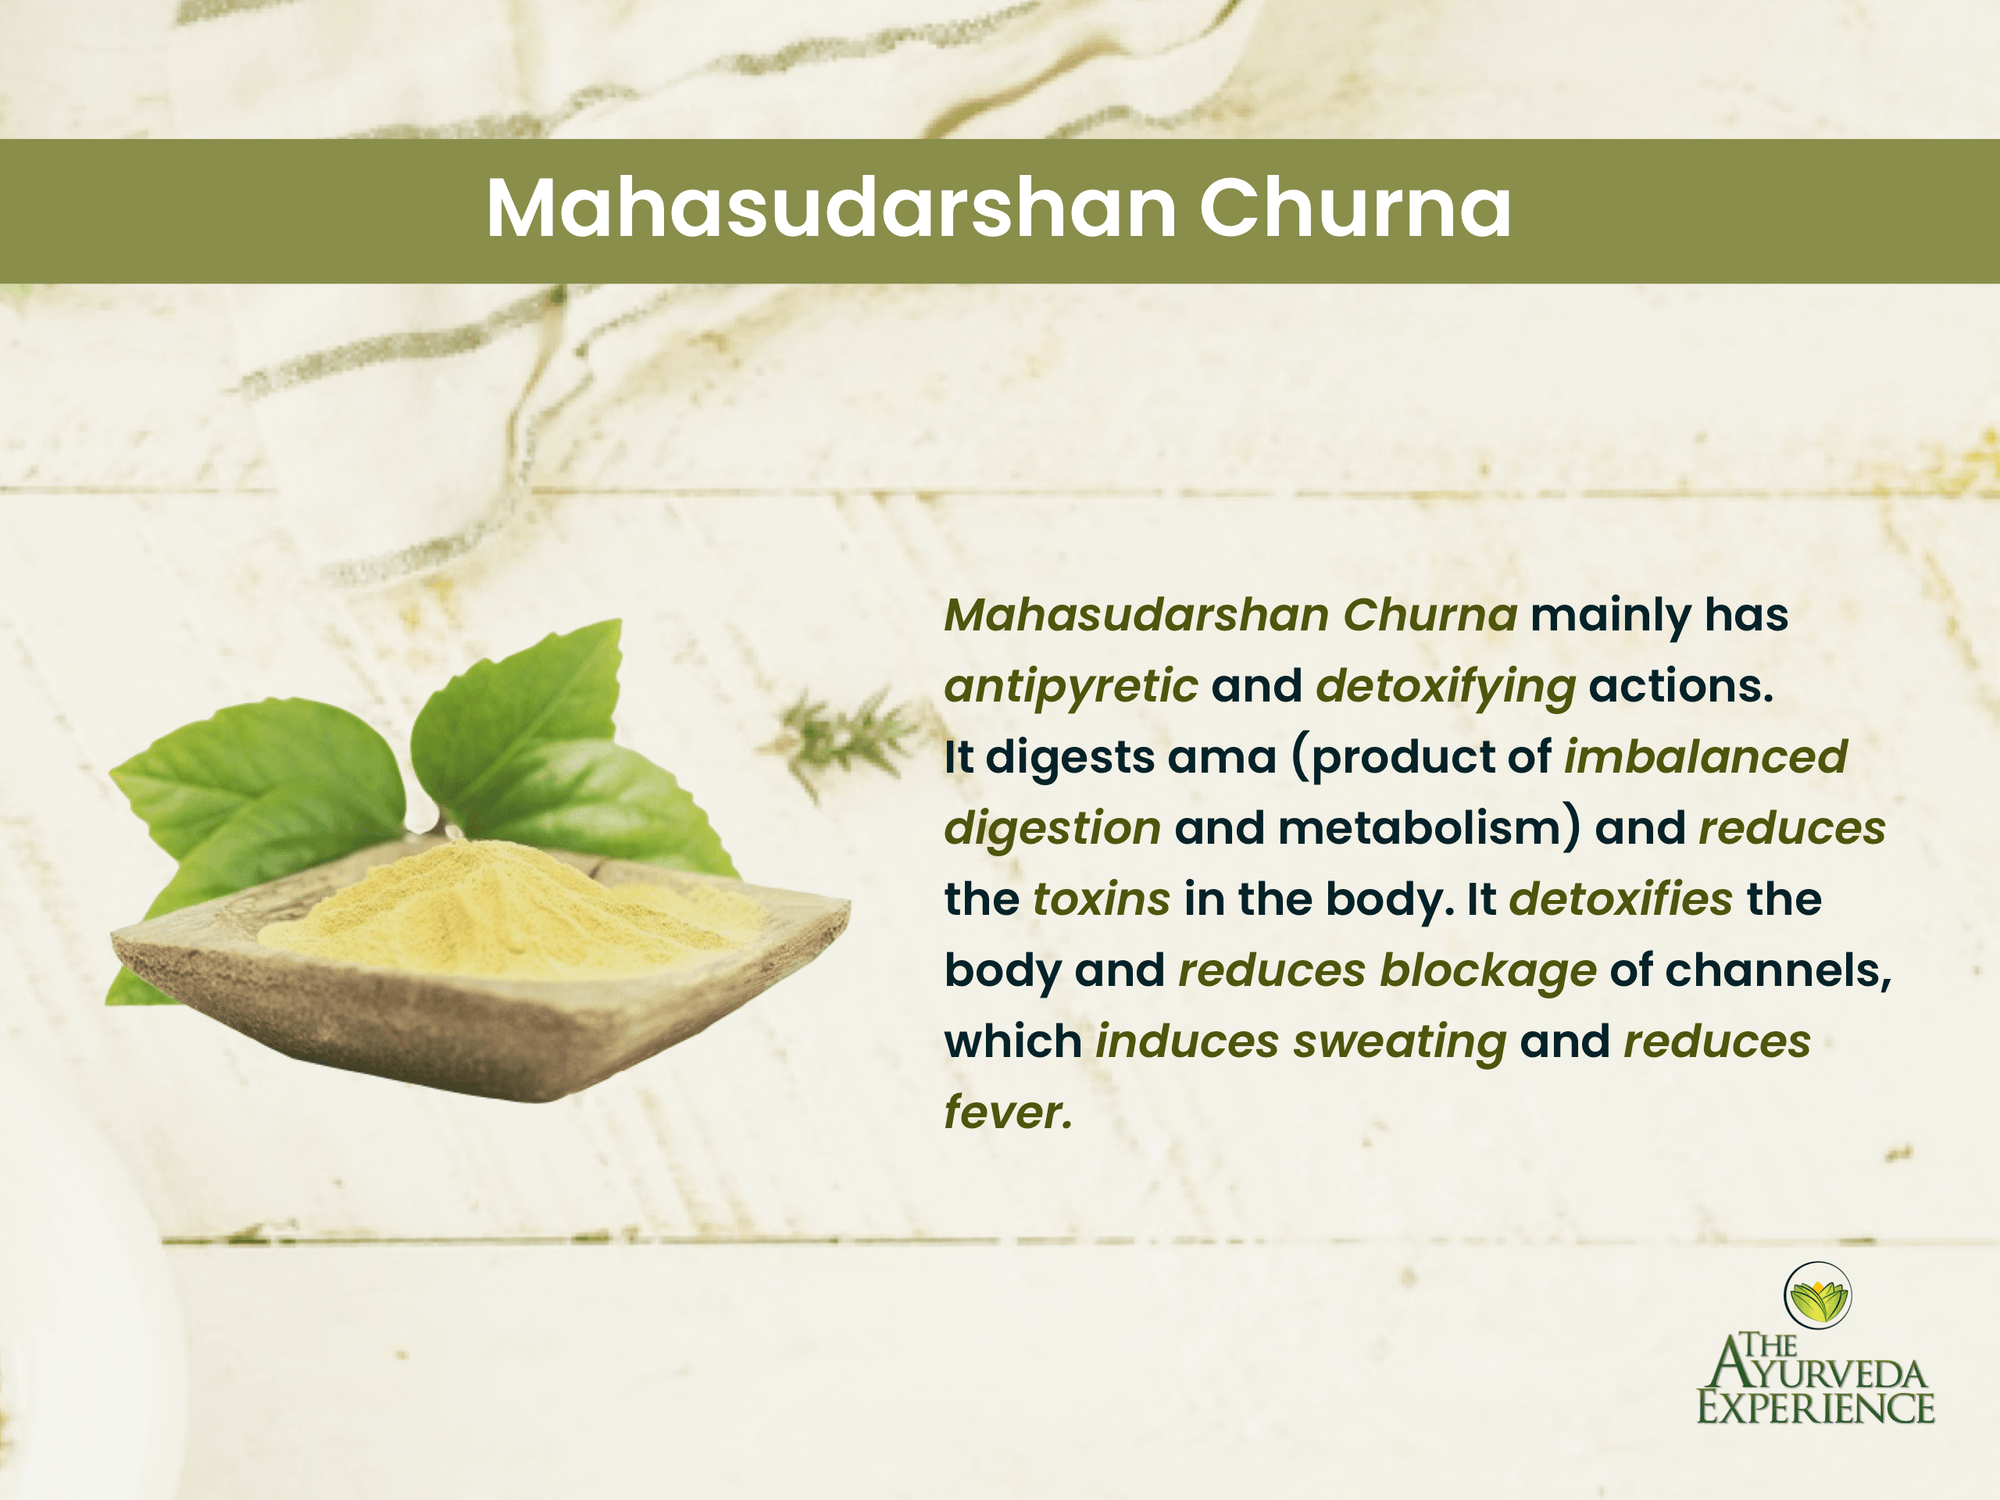 Manage all types of fevers with Mahasudarshana Churna